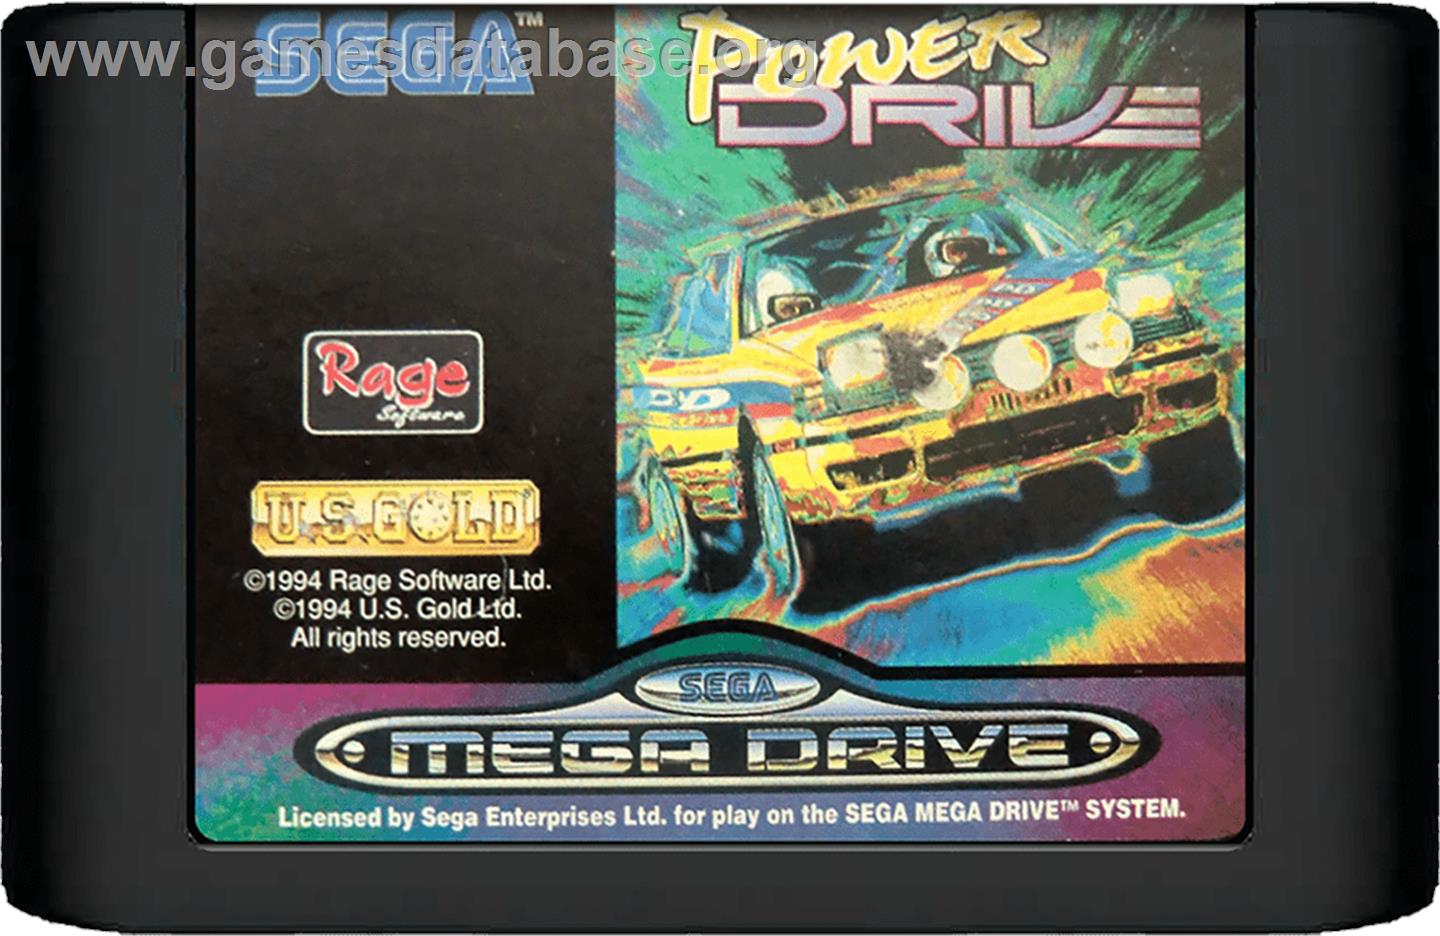 Power Drive - Sega Genesis - Artwork - Cartridge